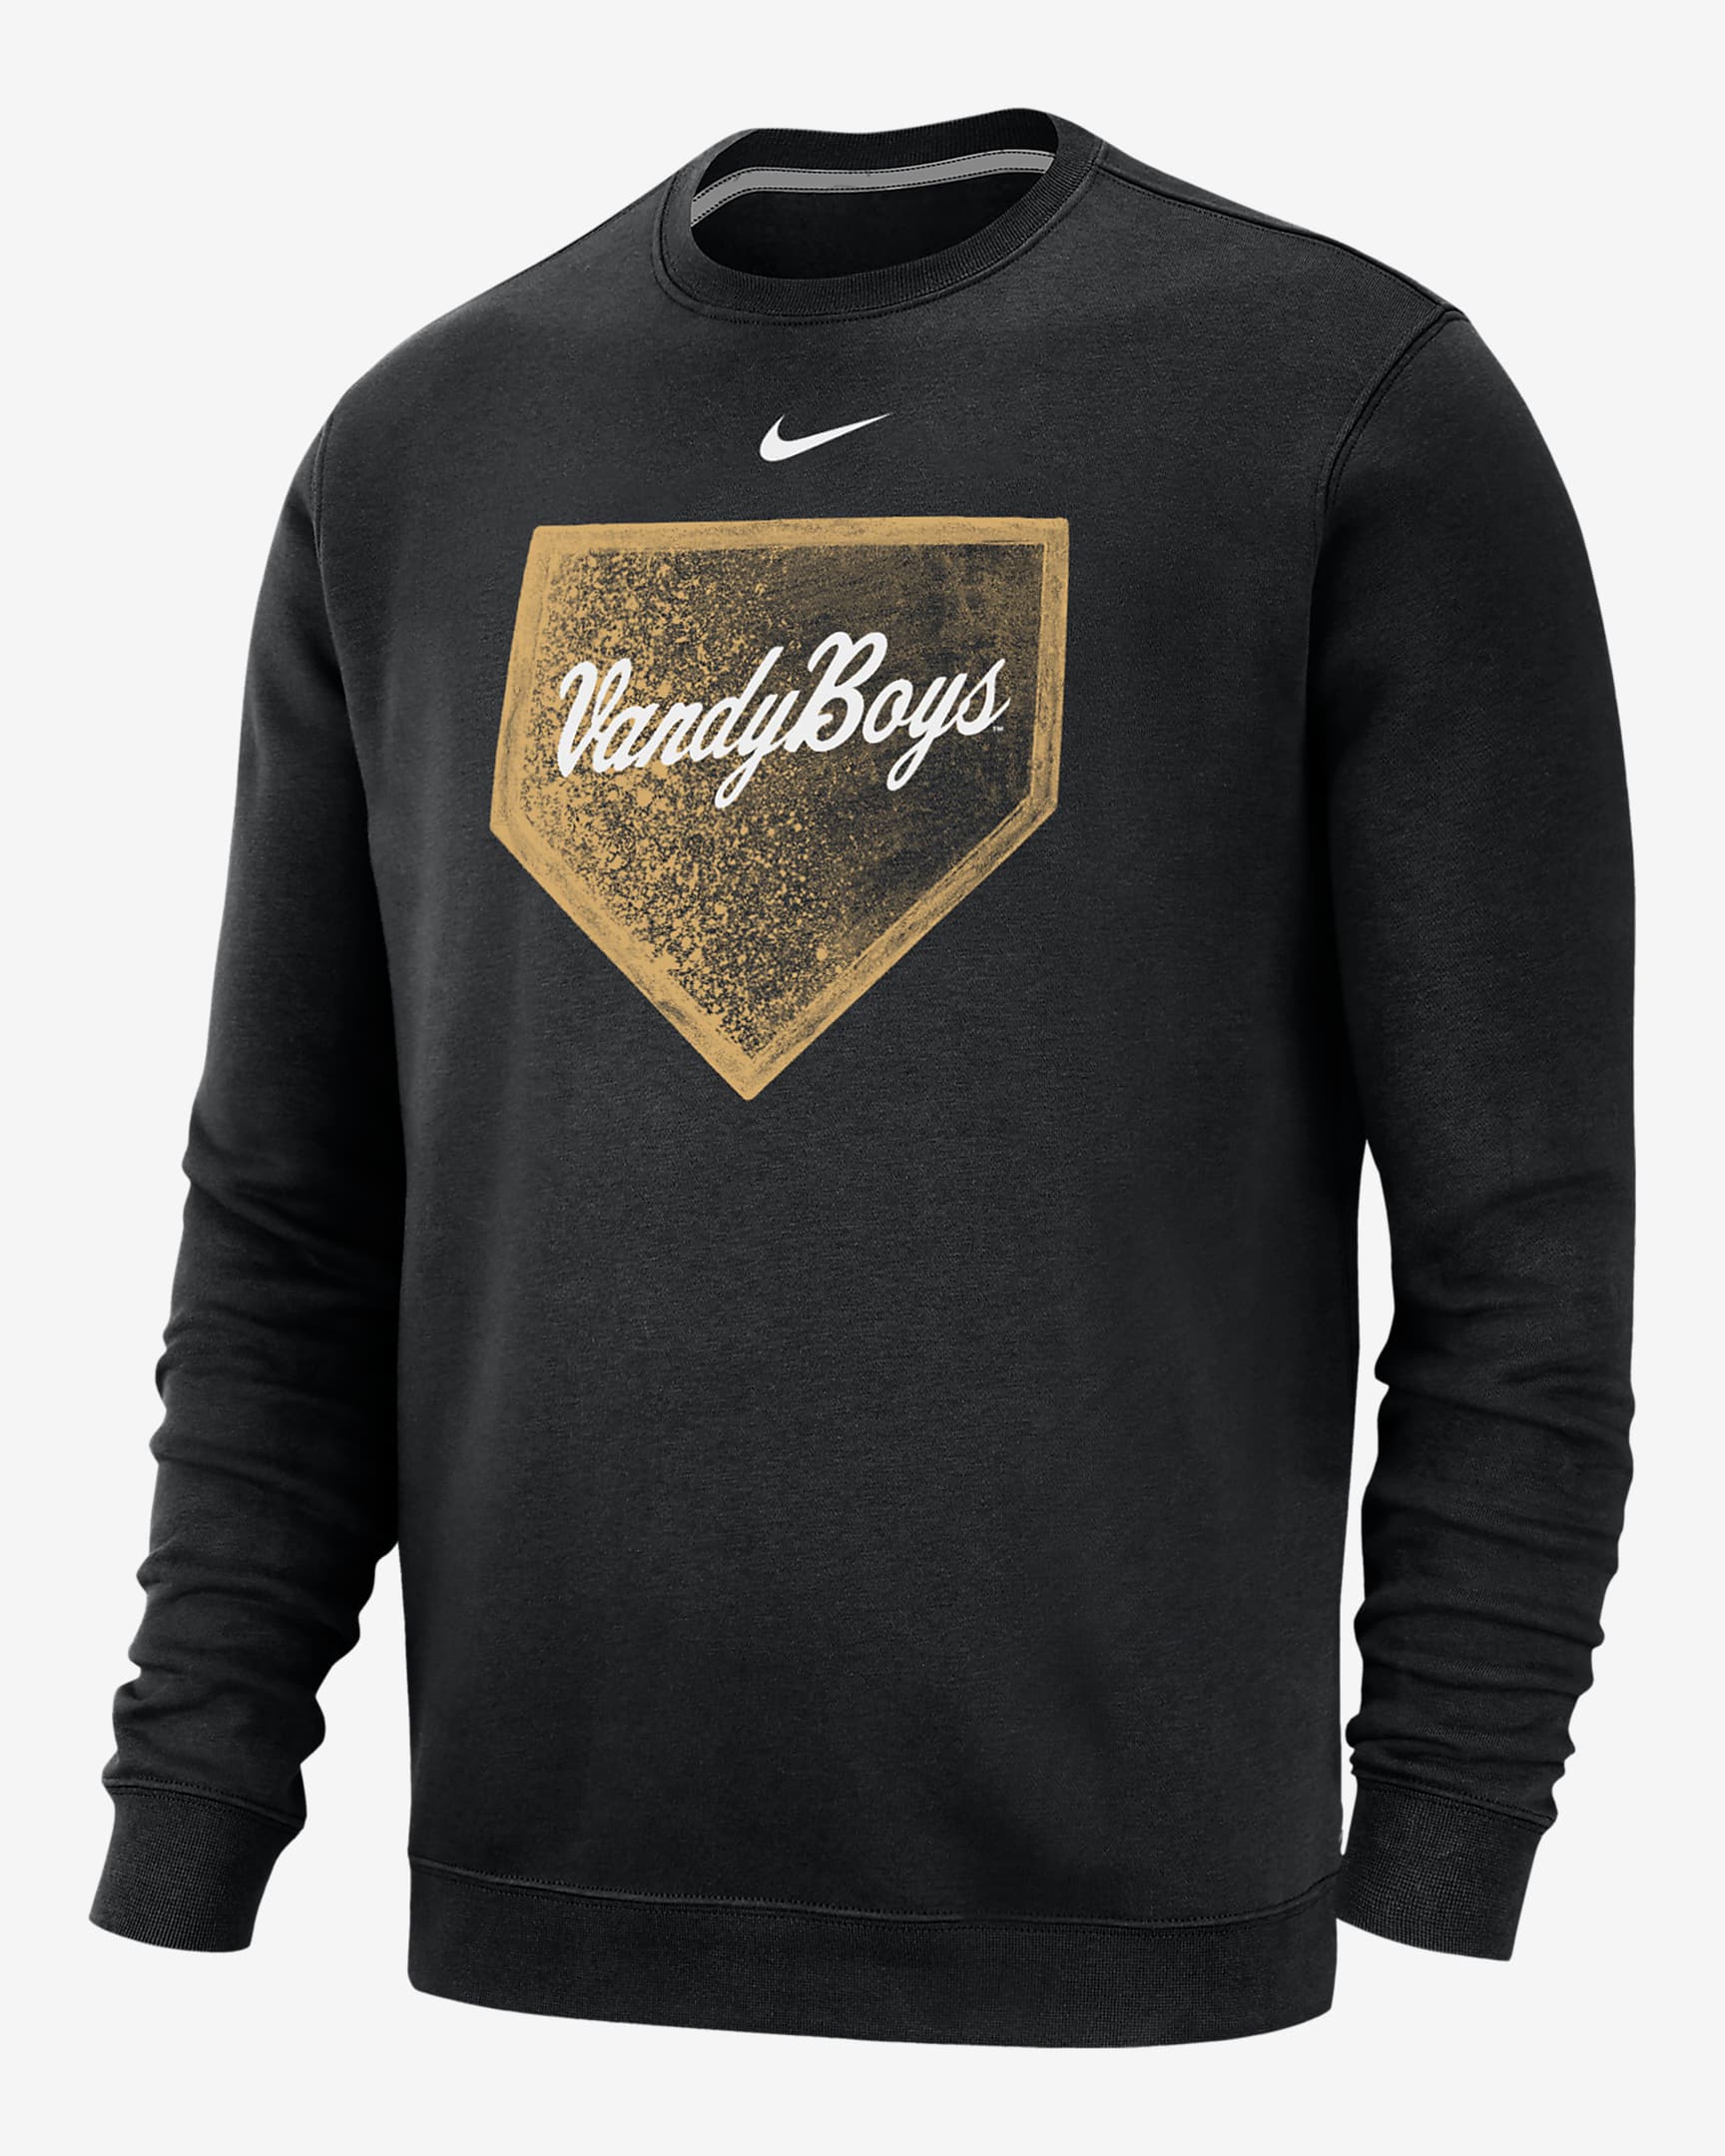 Vanderbilt Club Fleece Men's Nike College Crew-Neck Sweatshirt. Nike.com